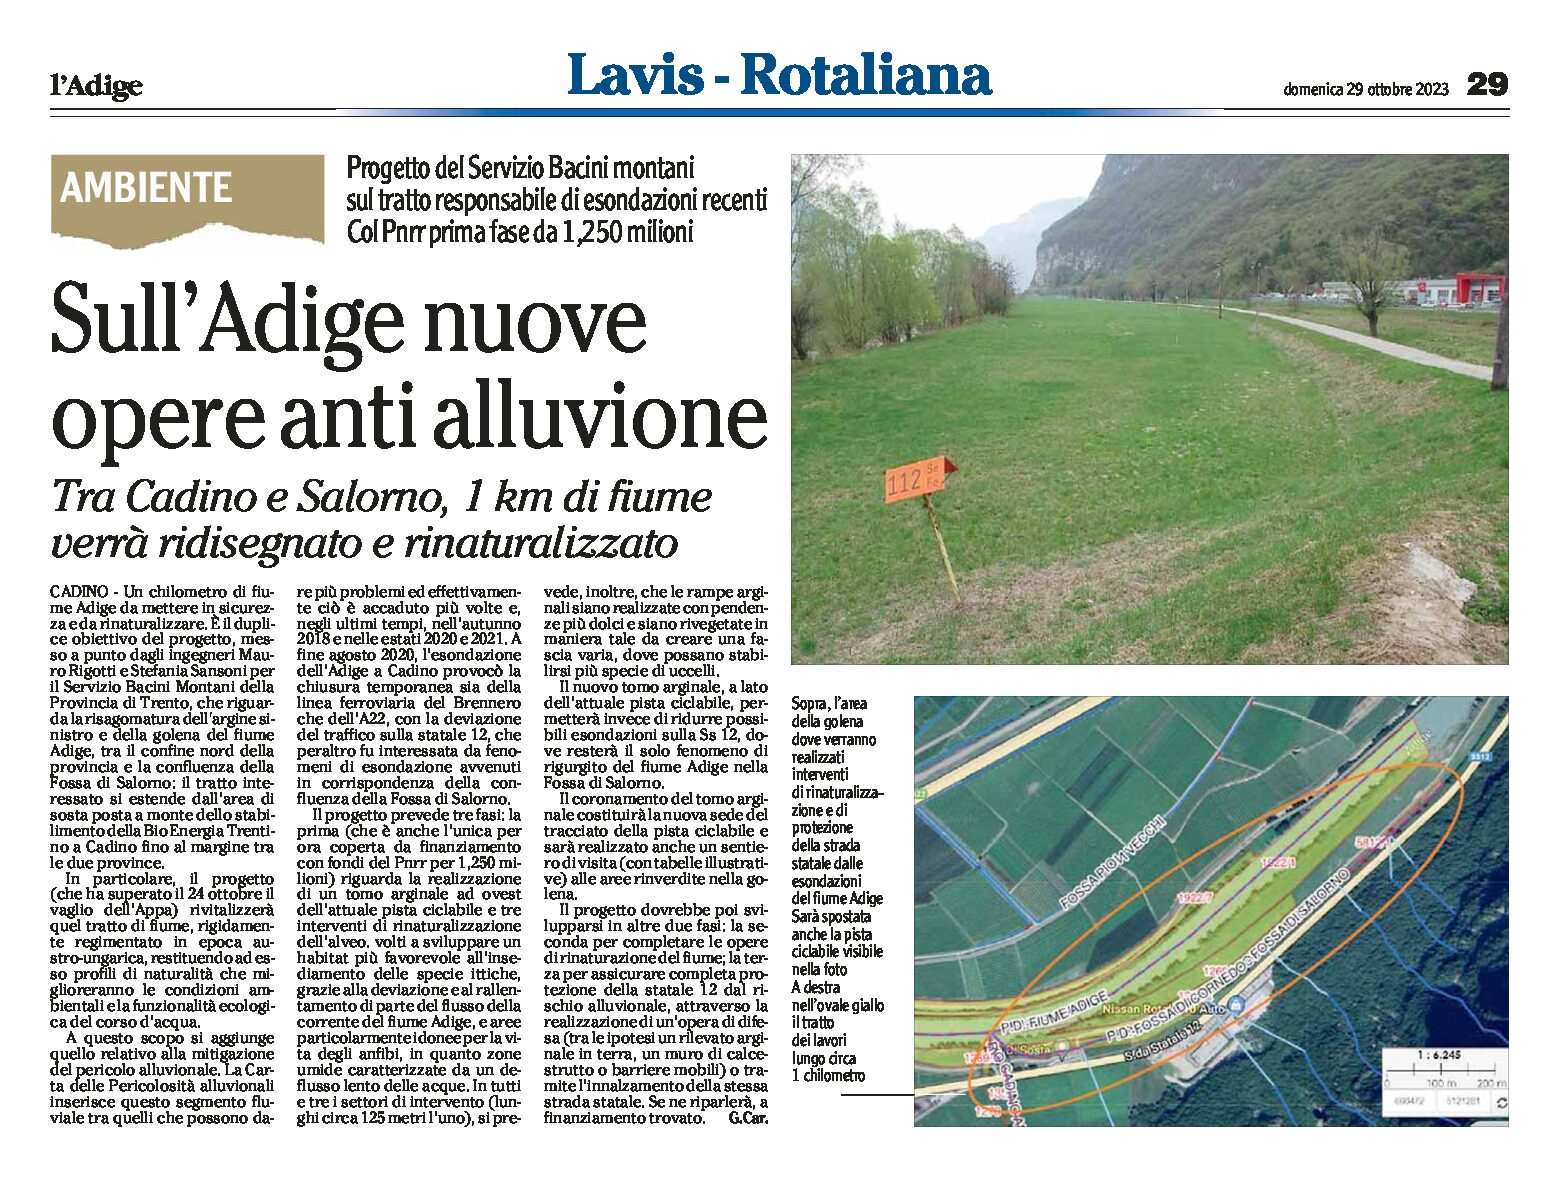 Tra Cadino e Salorno: lungo l’Adige nuove opere anti alluvione